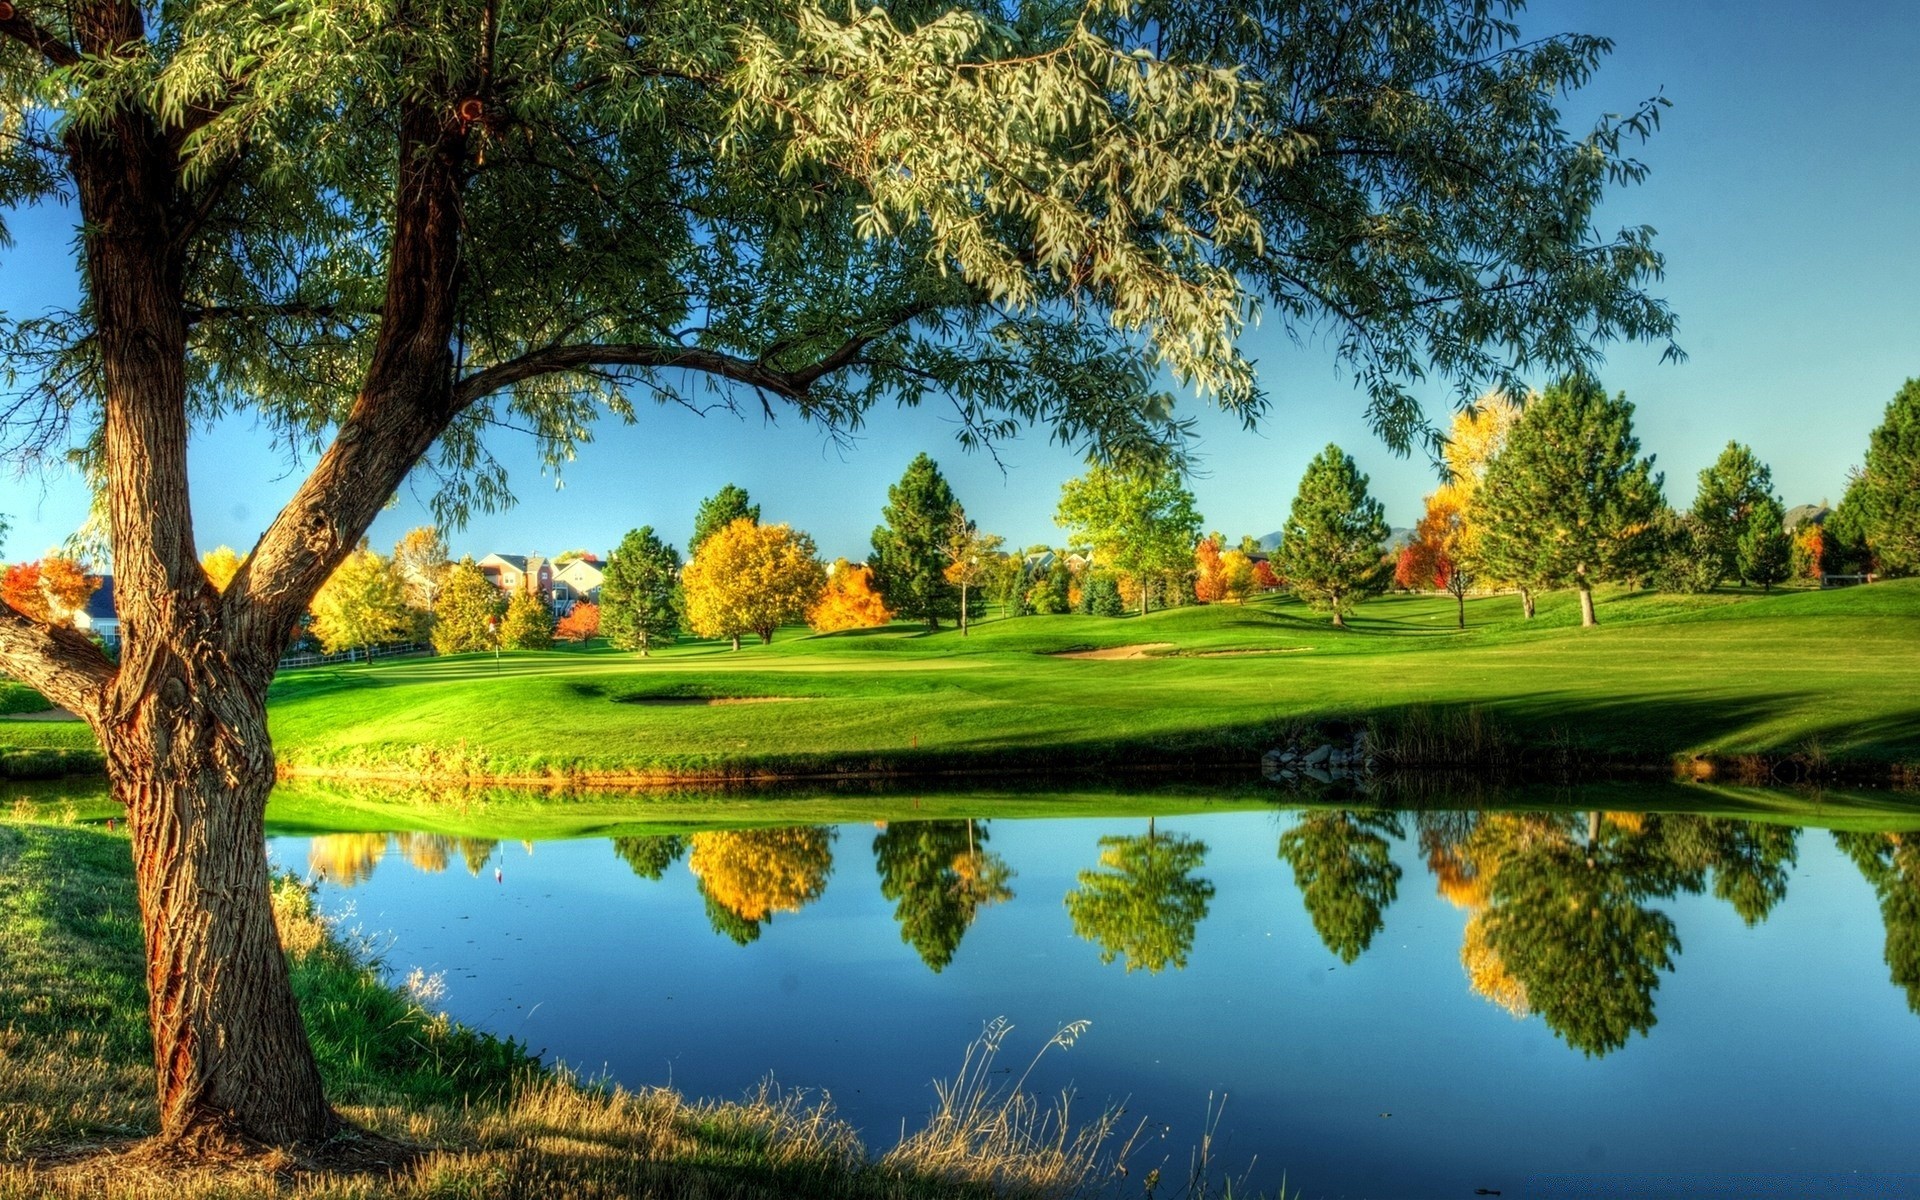 гольф дерево трава пейзаж природа озеро небо живописный на открытом воздухе лето отражение бассейн парк древесины воды сенокос зрелище сельских облако река